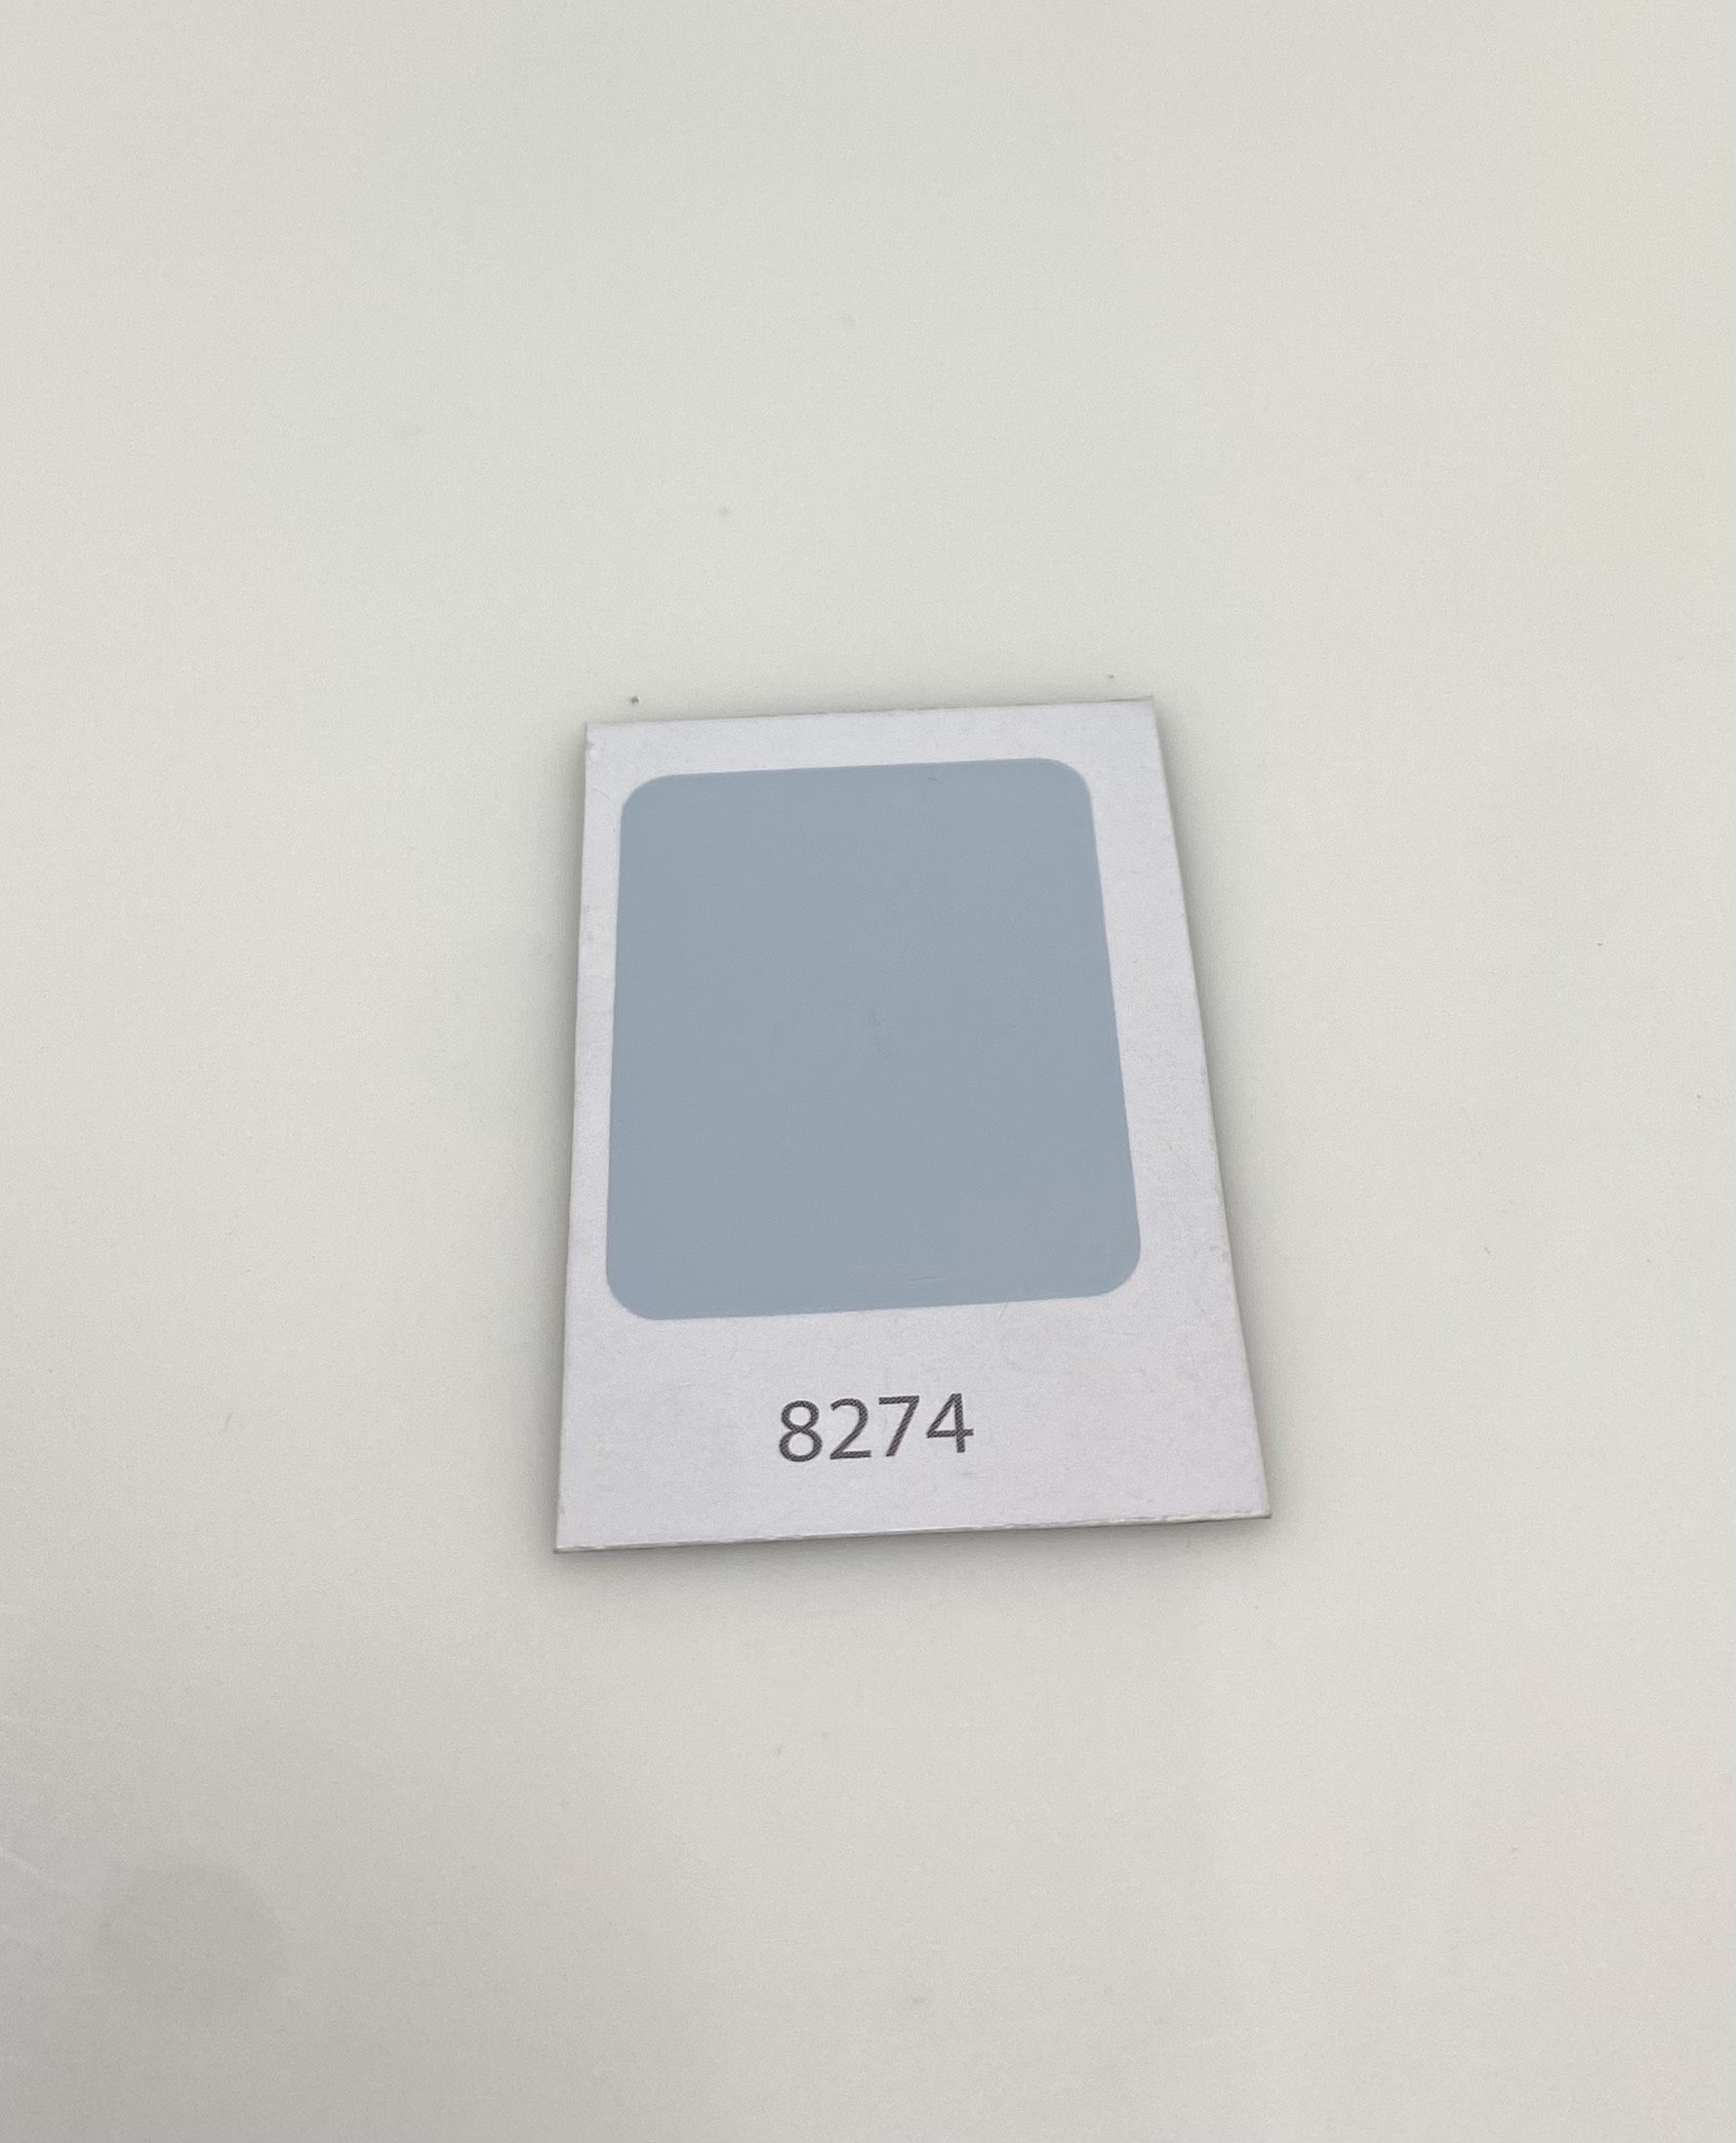 Sơn nước Toa Supertech ngoại thất màu xanh 8274 _ 5L